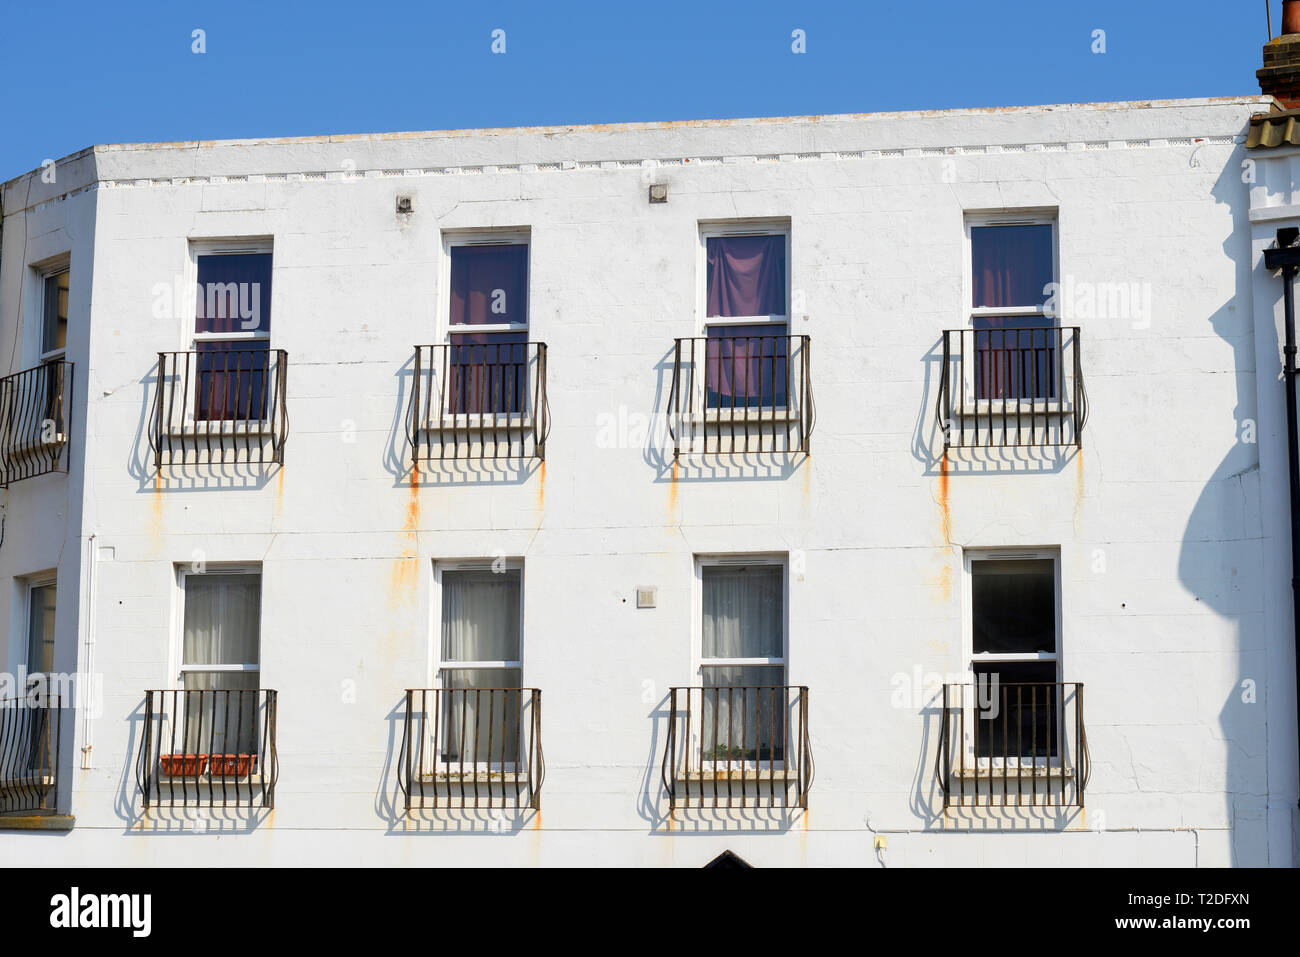 Bâtiment blanc clair avec des taches de rouille sur les balcons Juliette en métal. Peinture blanche abîmée. Balconet, balconettes balconnet sur façade Banque D'Images